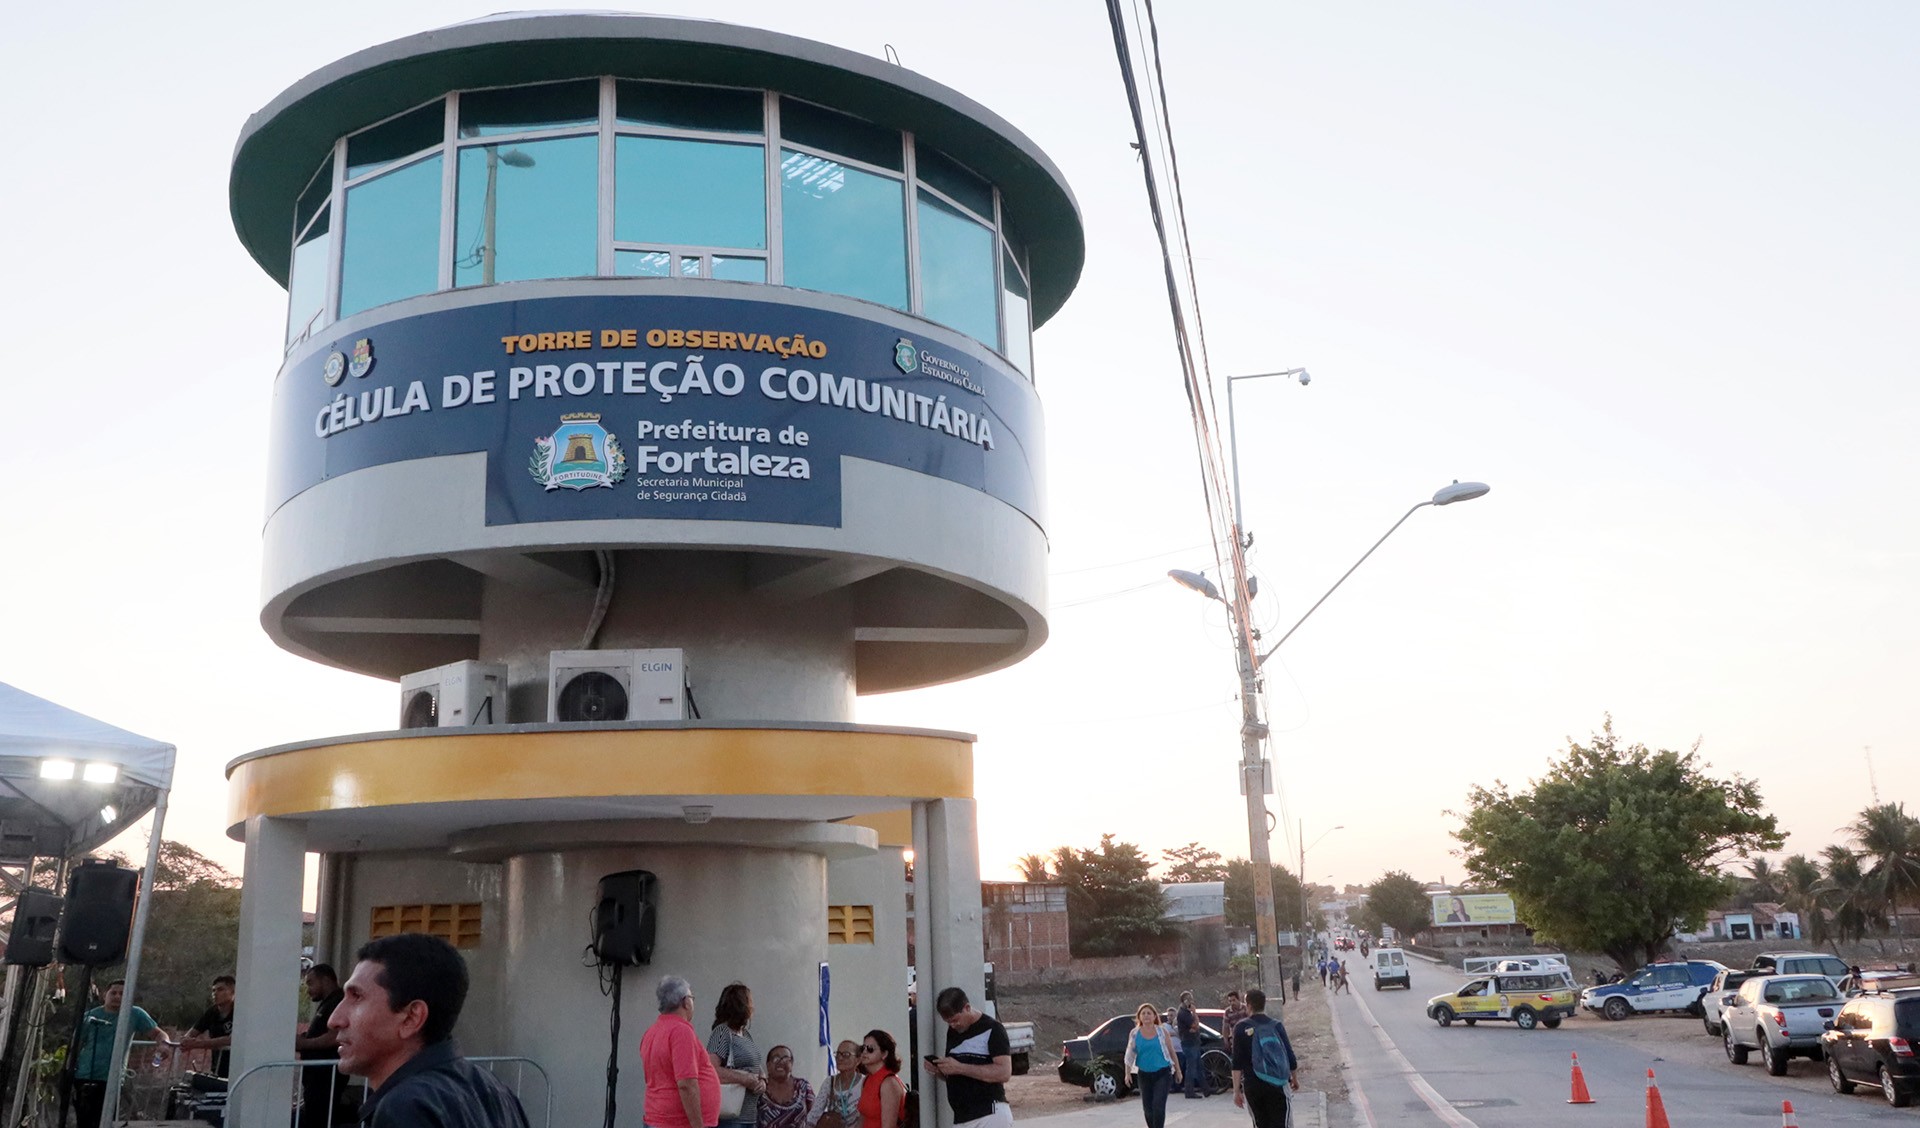 Fóruns Territoriais de Fortaleza - Fórun Territorial Cambeba, Parque Iracema e Messejana - Prefeitura de Fortaleza entrega oitava Célula de Proteção Comunitária